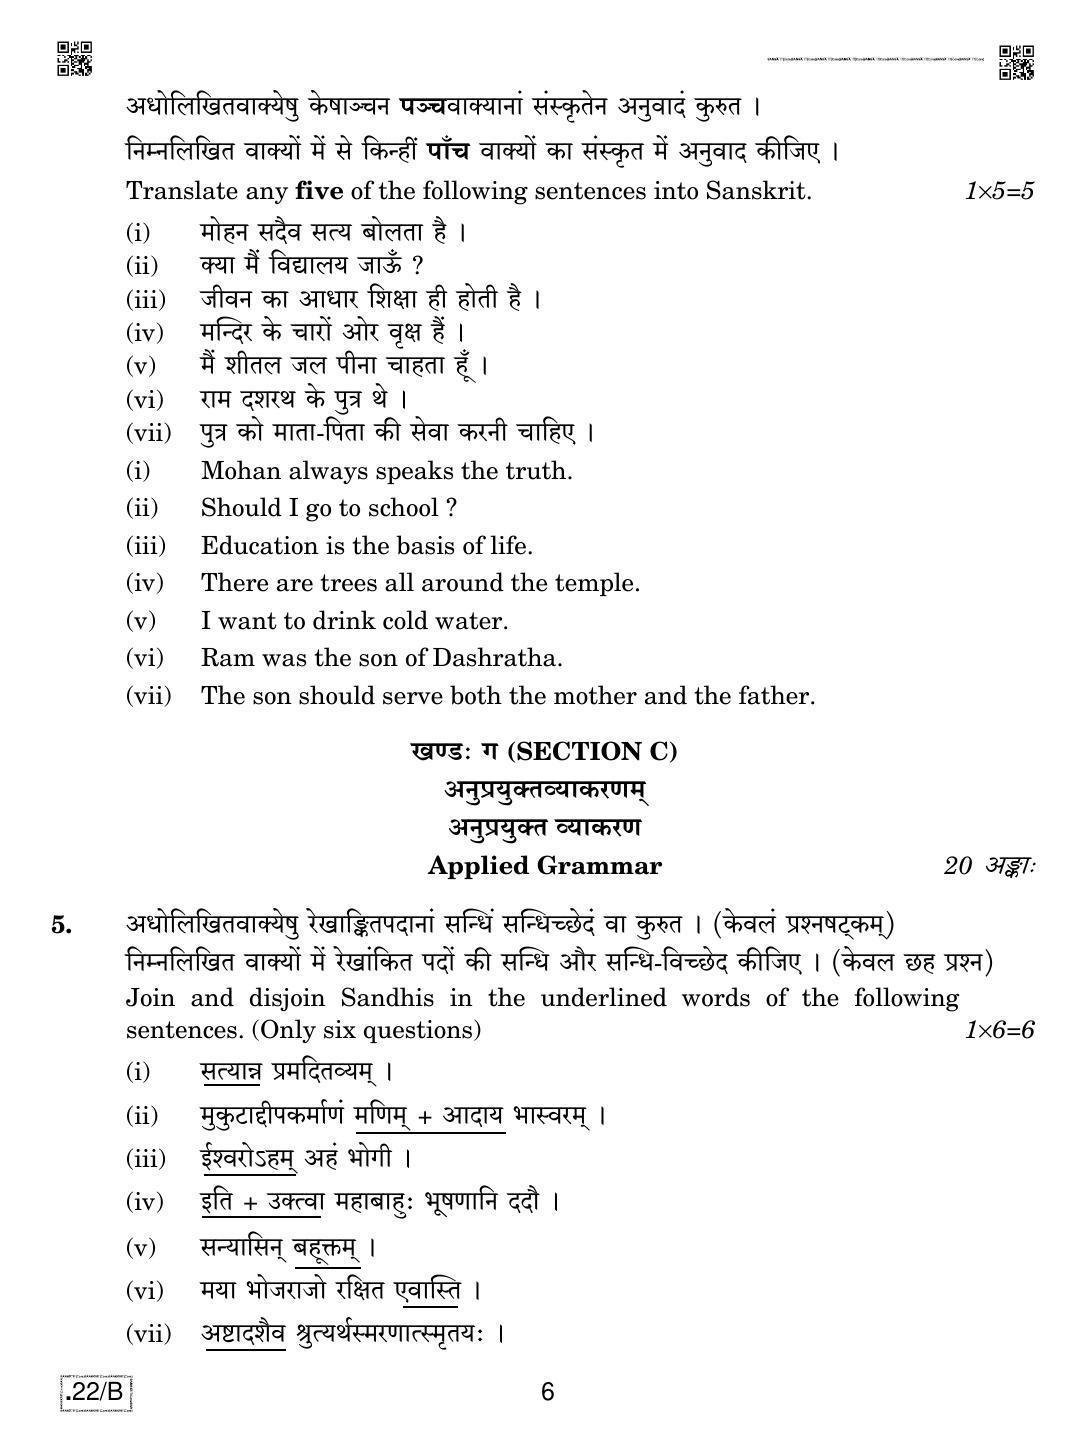 CBSE Class 12 Sanskrit Core 2020 Compartment Question Paper - Page 6